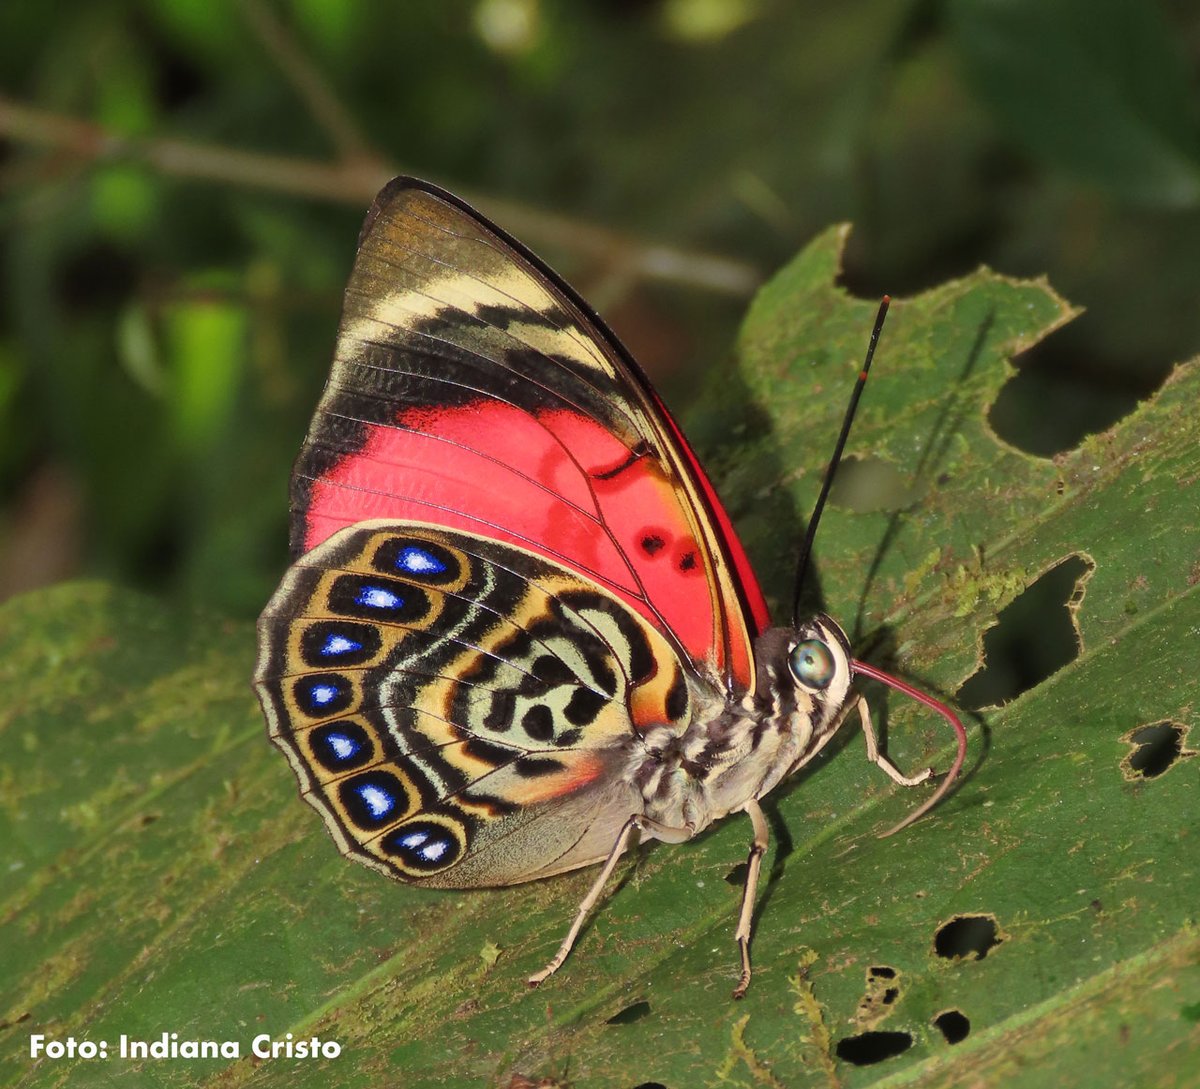 🦋El Líbano, vereda de Orito (Putumayo), es el hogar de, al menos, 299 especies de mariposas. Habilitaron senderos para observarlas. Entérate 👉 bit.ly/4av0m9T #ProyectoVidaSilvestre #AlasPutumayo #Lepidopteracolombiana @ECOPETROL_SA